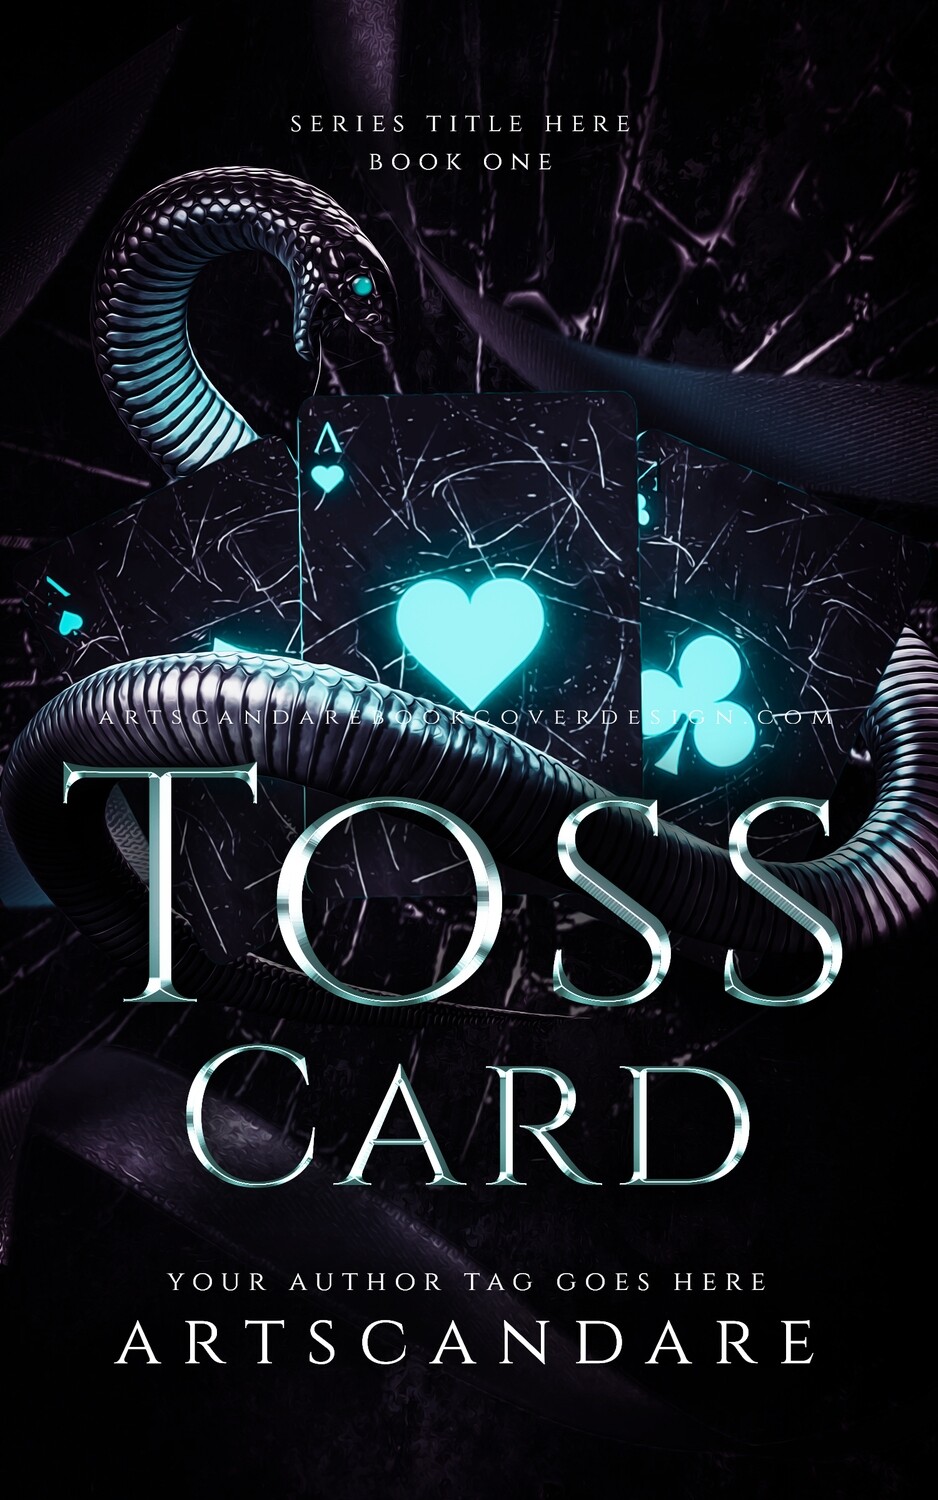 TOSS CARD